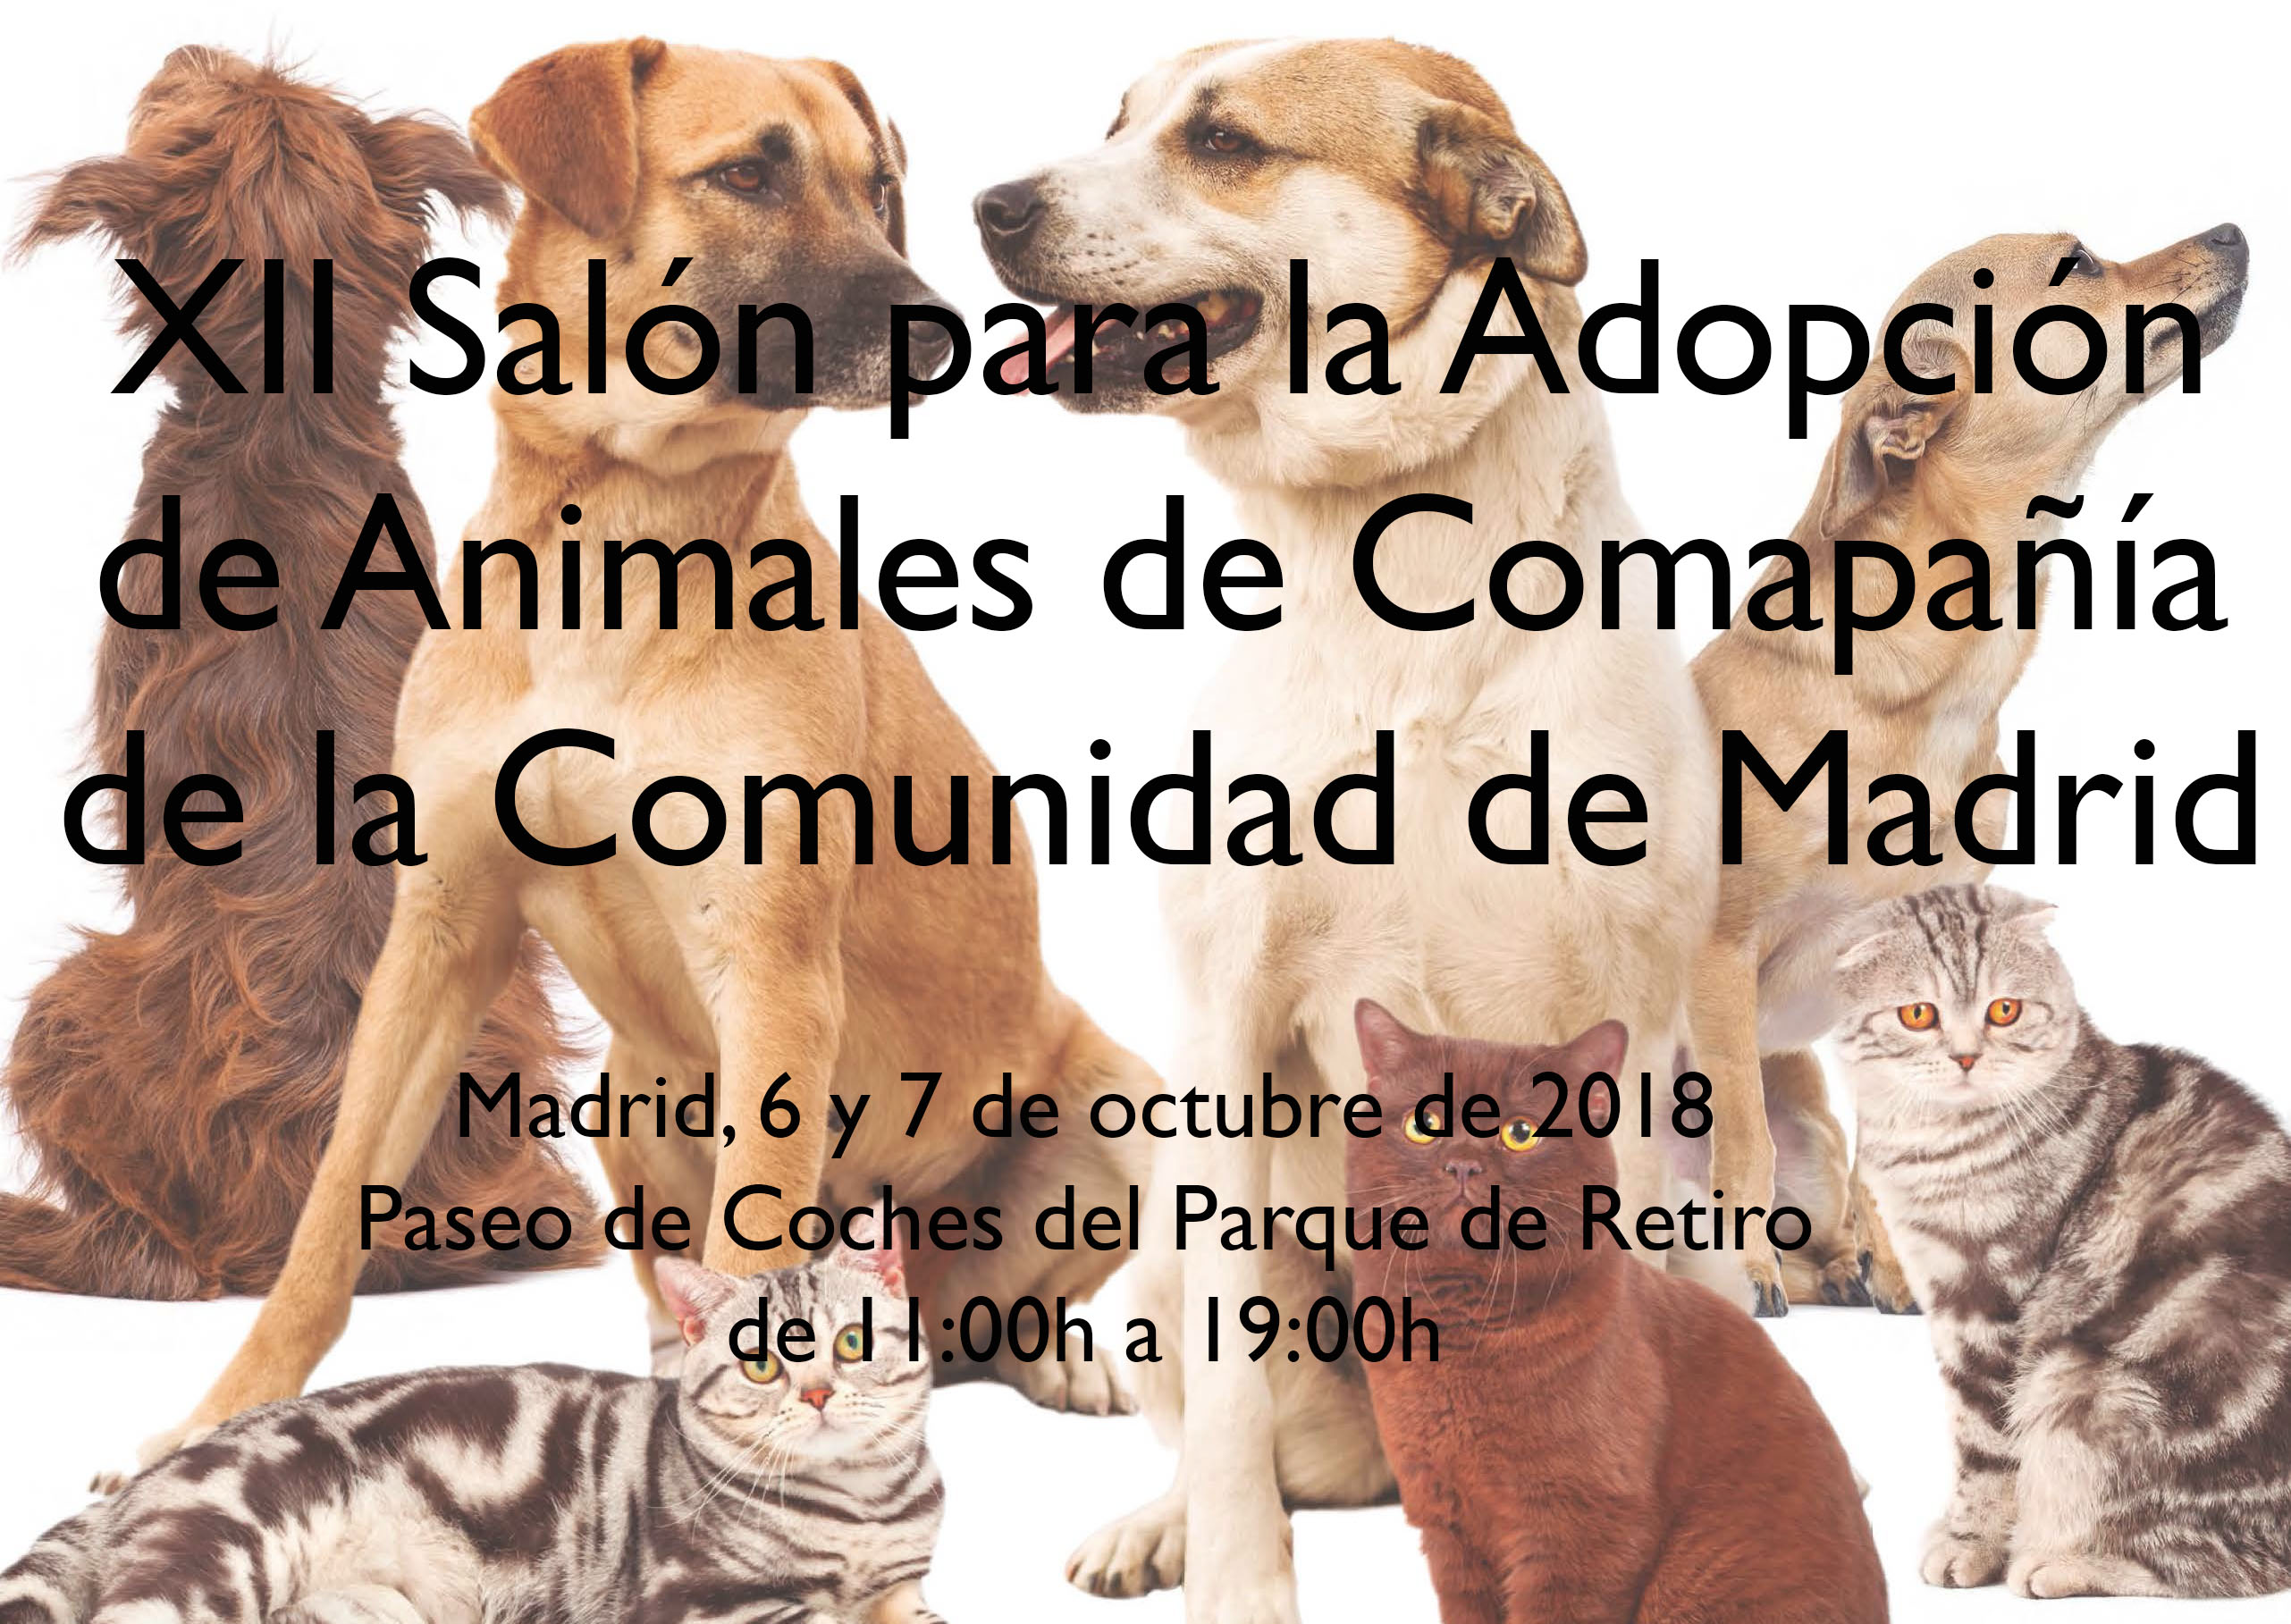 Madrid Salud participa en el XIII Salón para la Adopción de Animales de Compañía